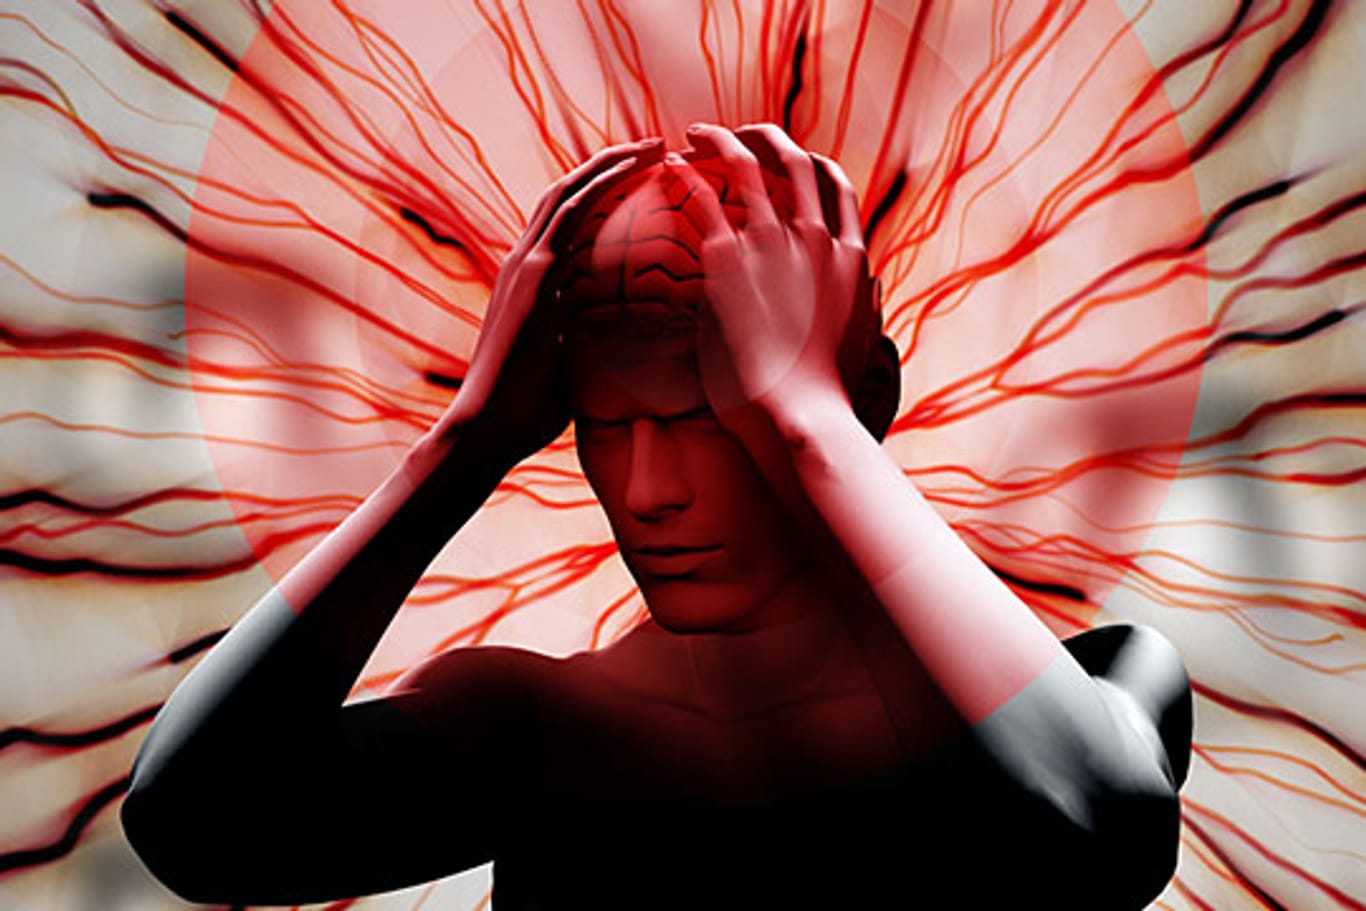 Bluthochdruck kann der Auslöser für Kopfschmerzen sein.